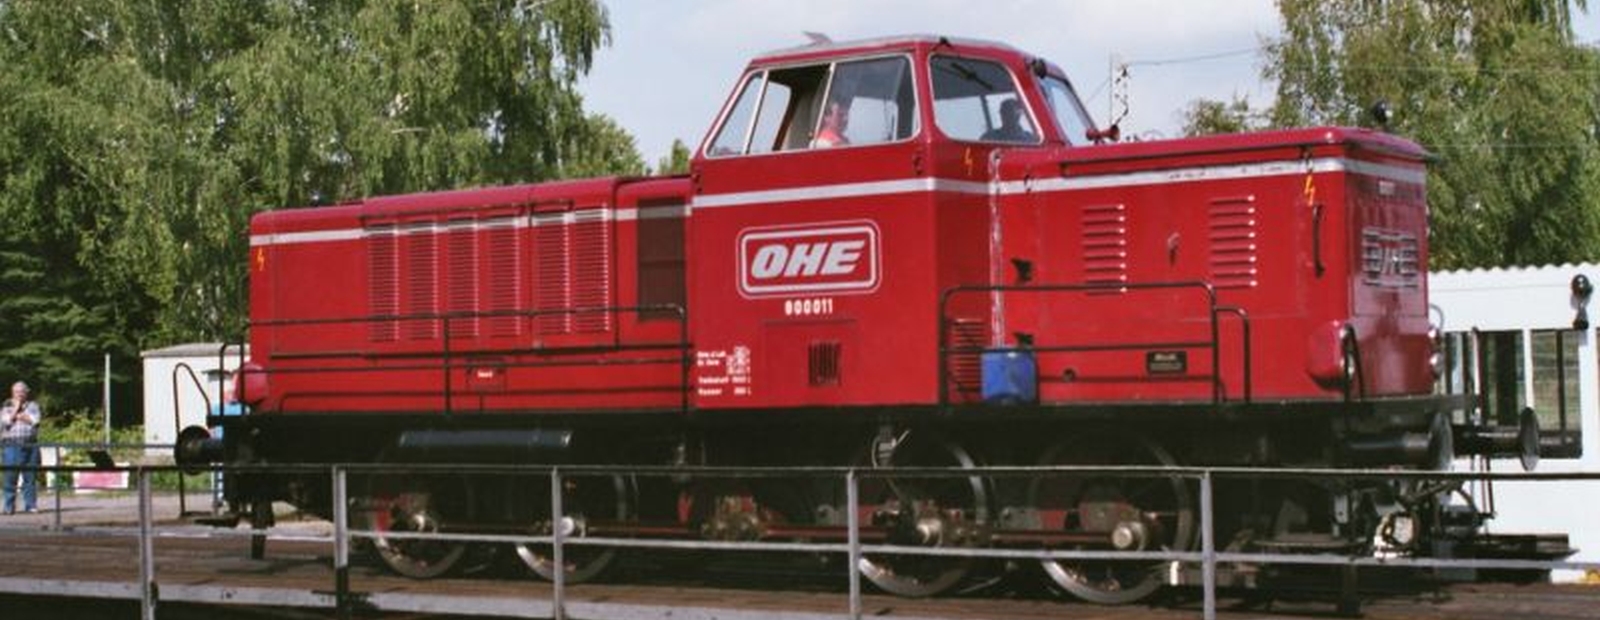 MaK 800 D of the Osthannoversche Eisenbahnen